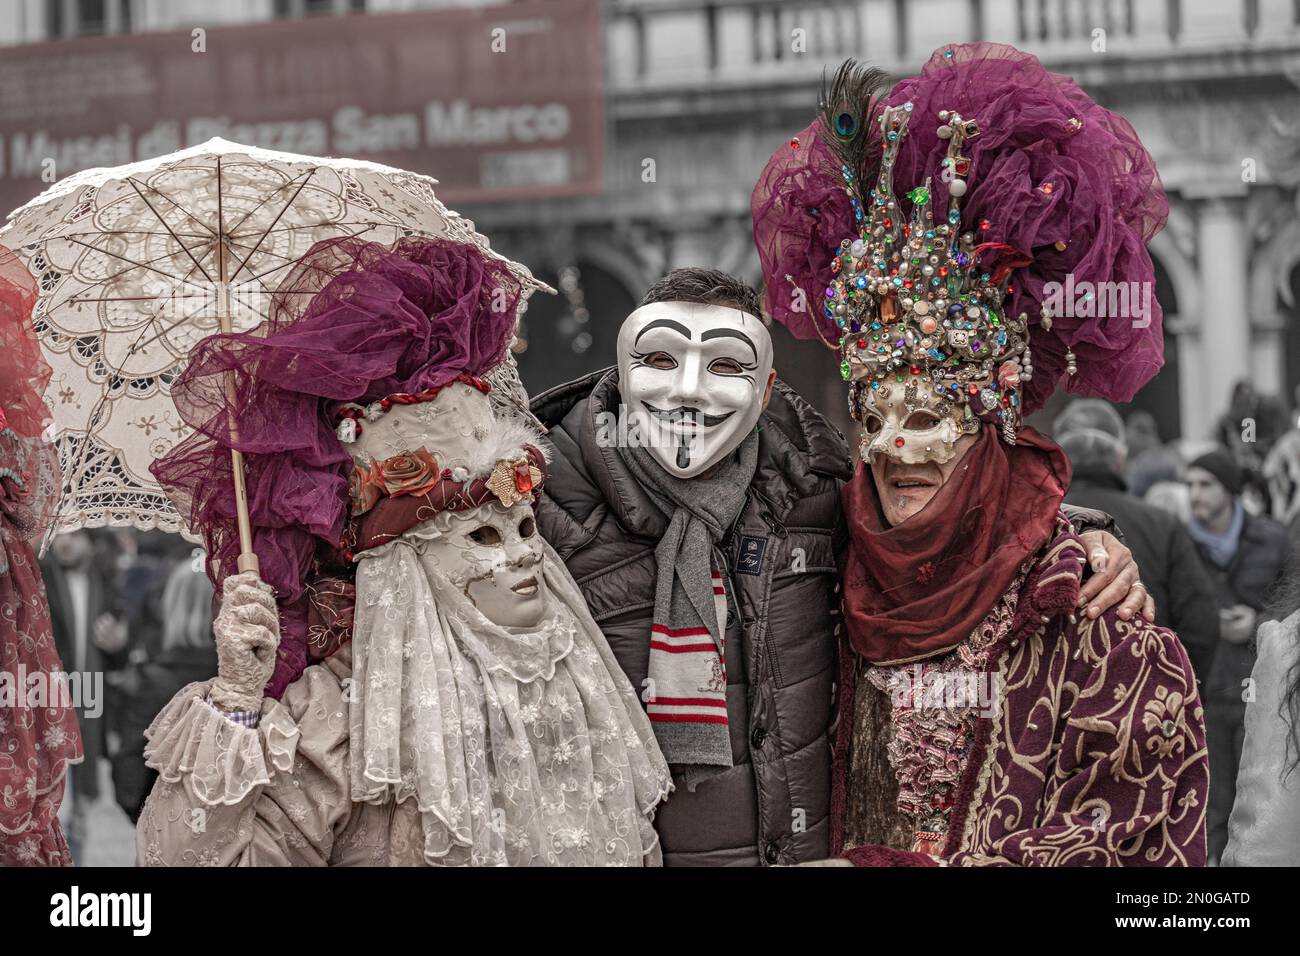 Carnevale di Venezia. Un uomo in maschera anonima è in posa con